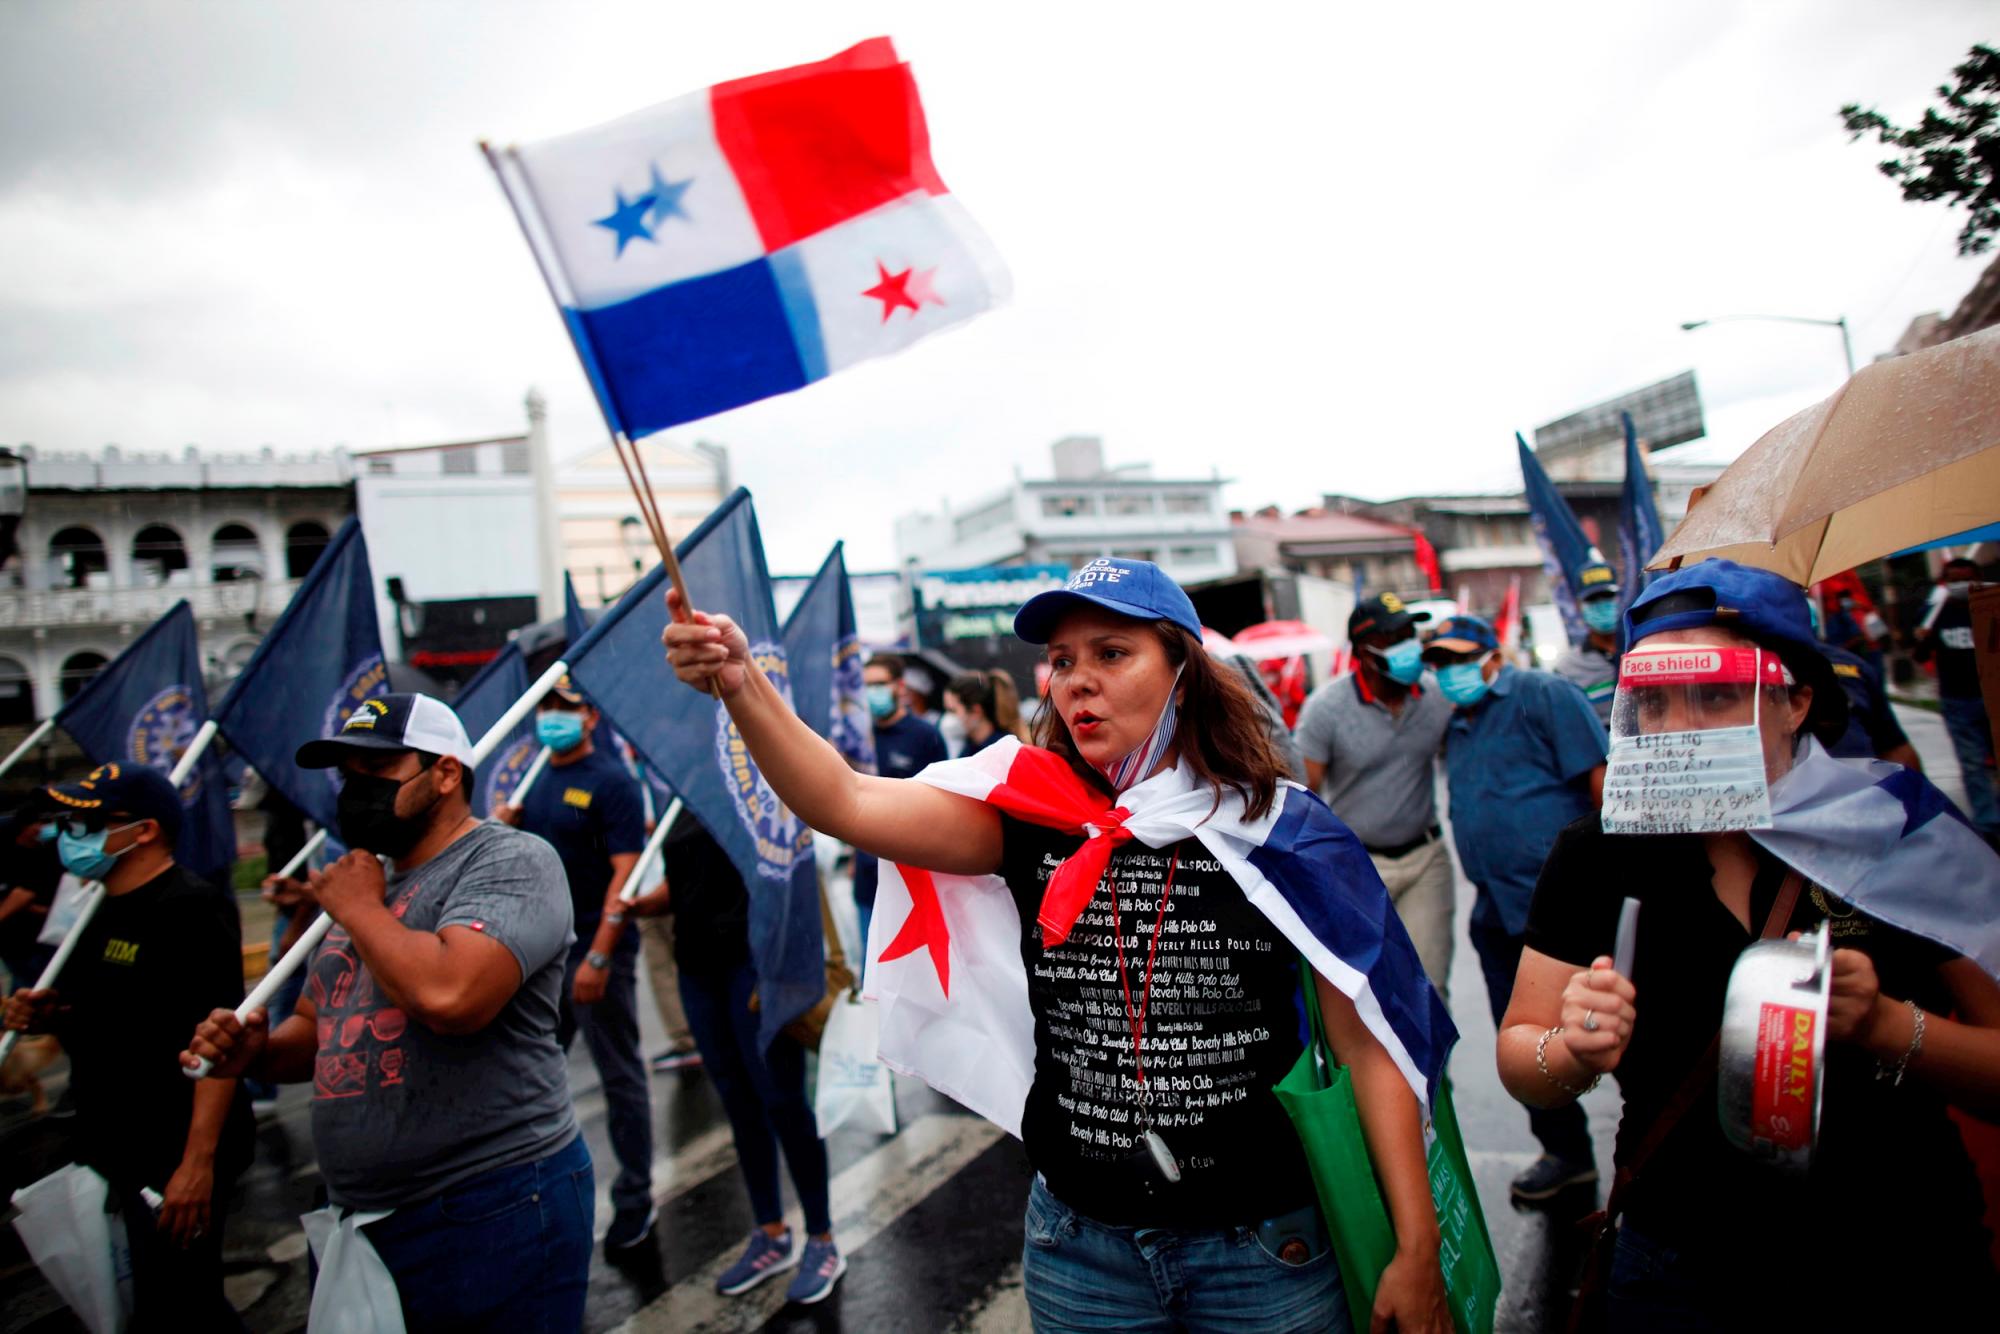 CIUDAD DE PANAMÁ. Trabajadores del Canal de Panamá se manifiestan hoy para solicitar un alza salarial digna. Grupos de trabajadores del Canal protestaron este miércoles en la capital panameña contra el alza salarial irrisoria que supuestamente pretende imponer la administración de la vía, por la que pasa el 6 % del comercio mundial. 